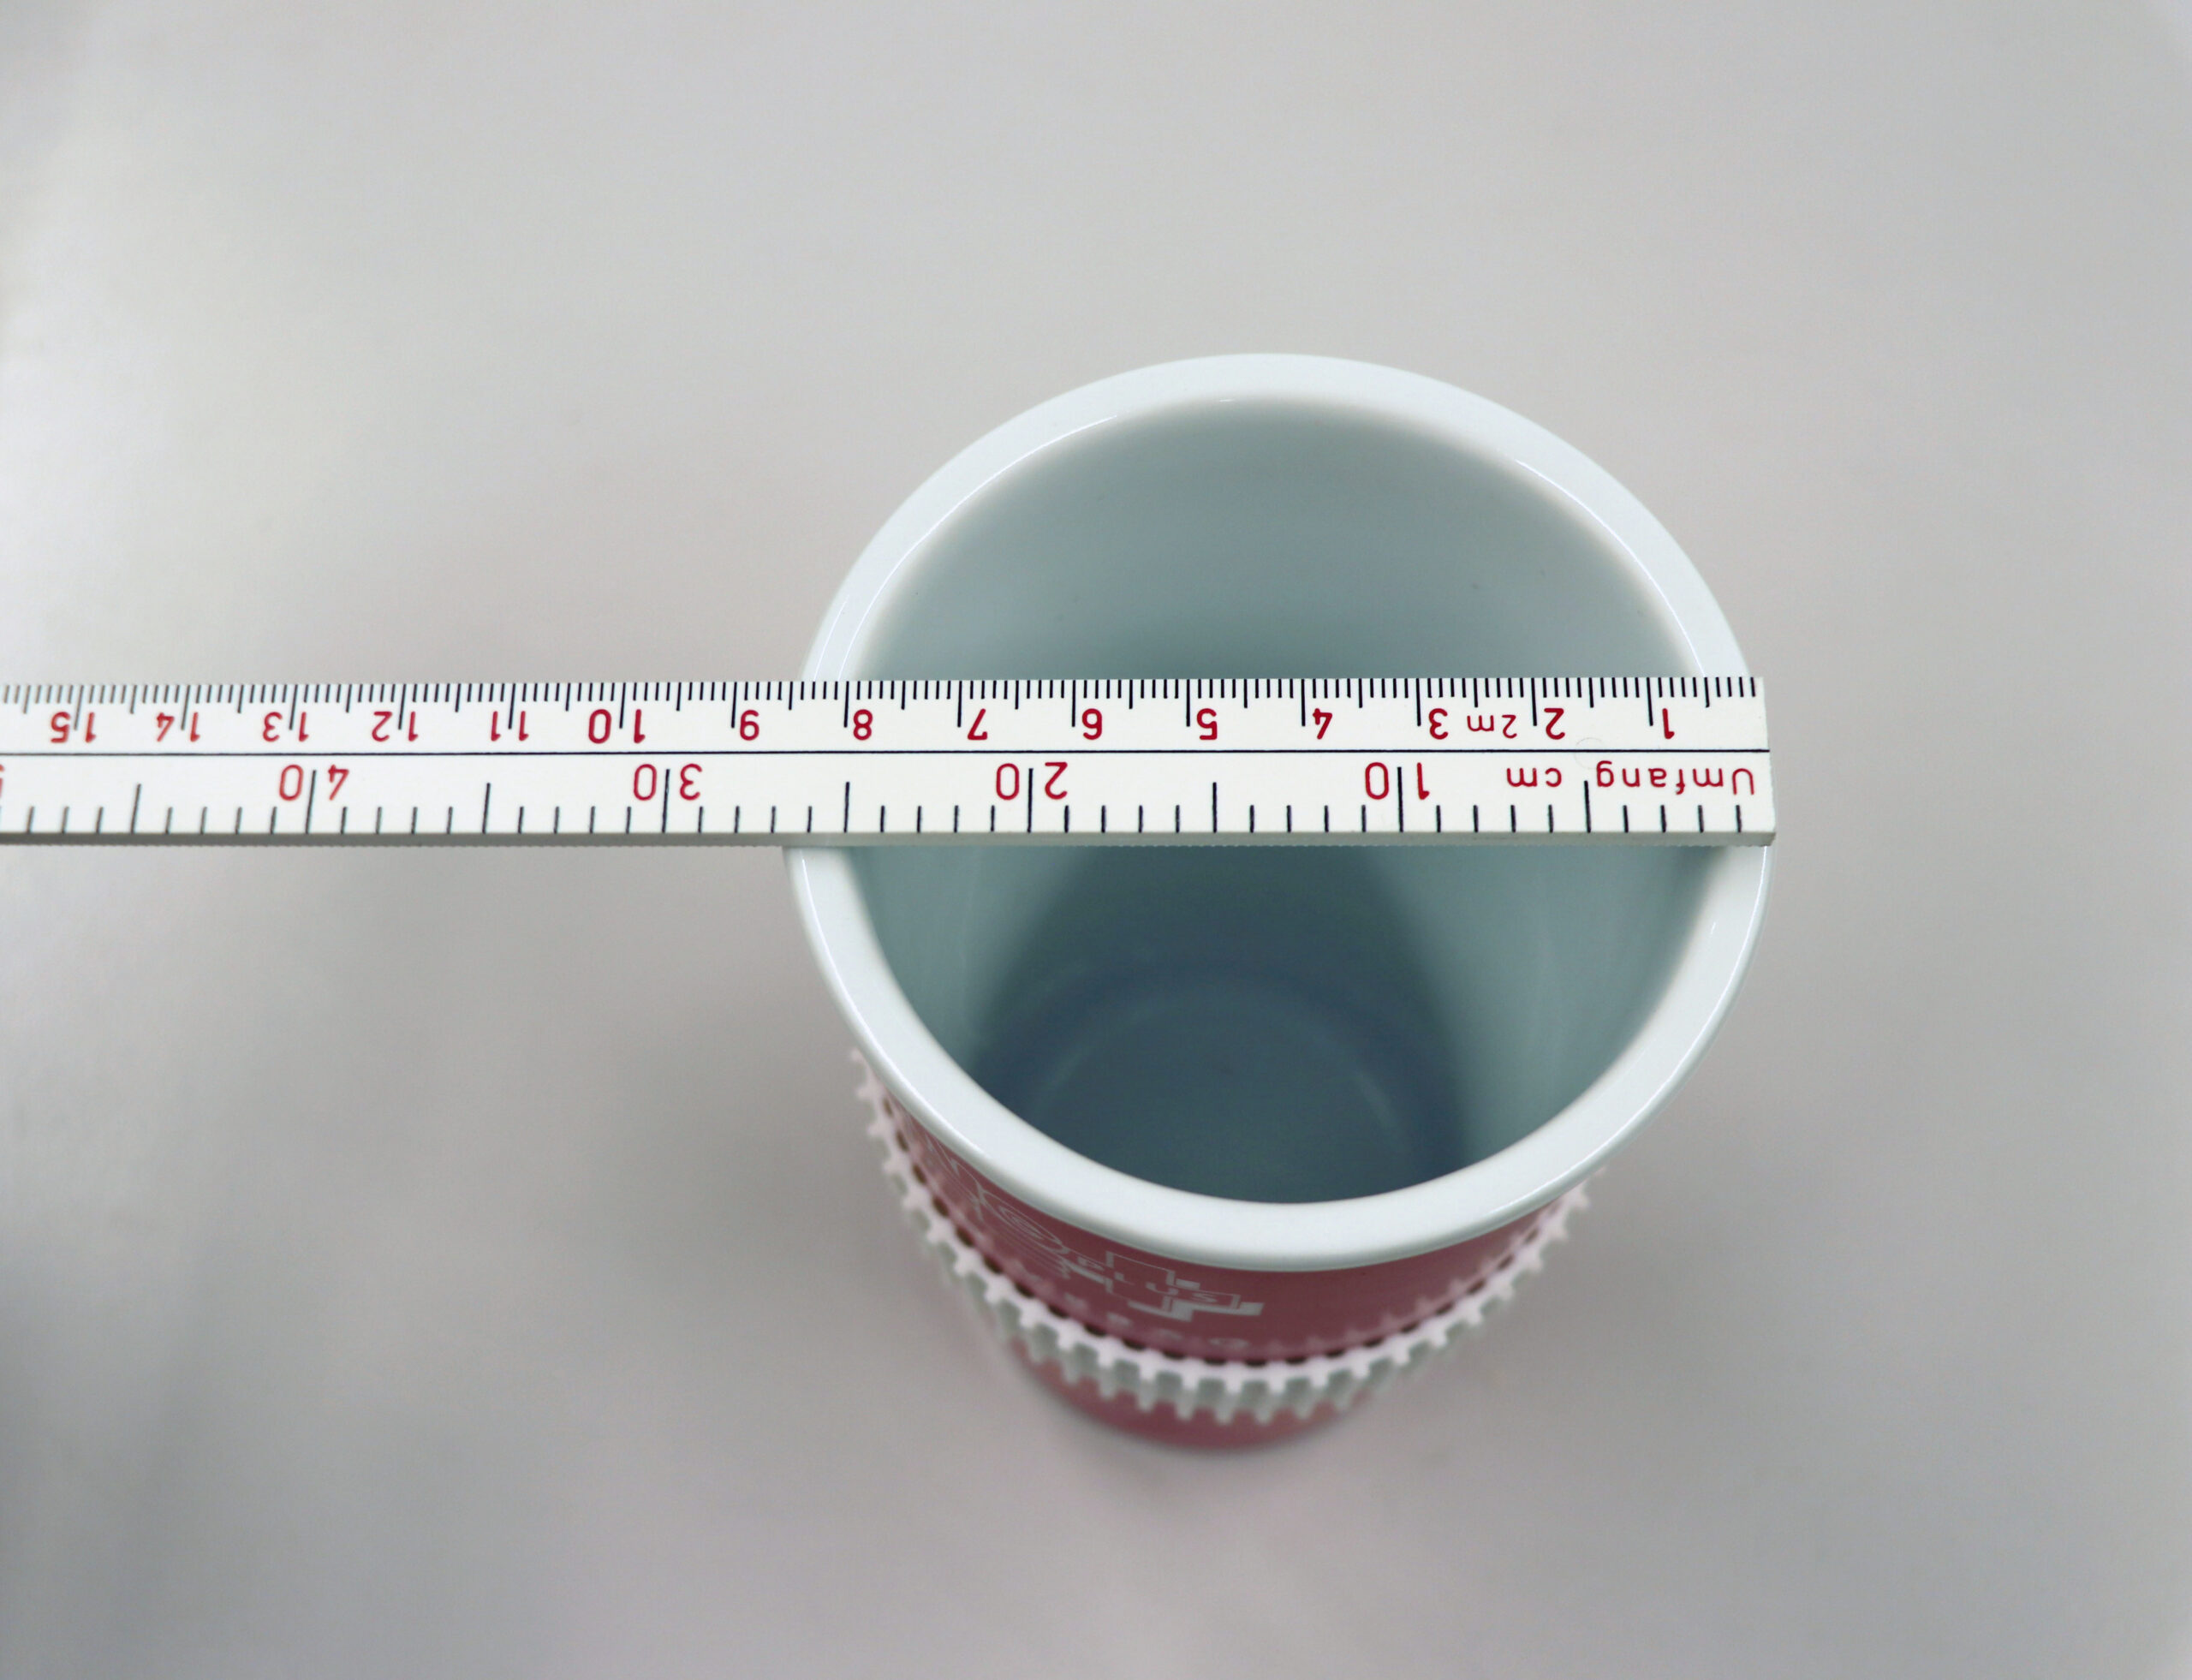 Messen des Umfanges einer Tasse mit dem Umfang-Meter